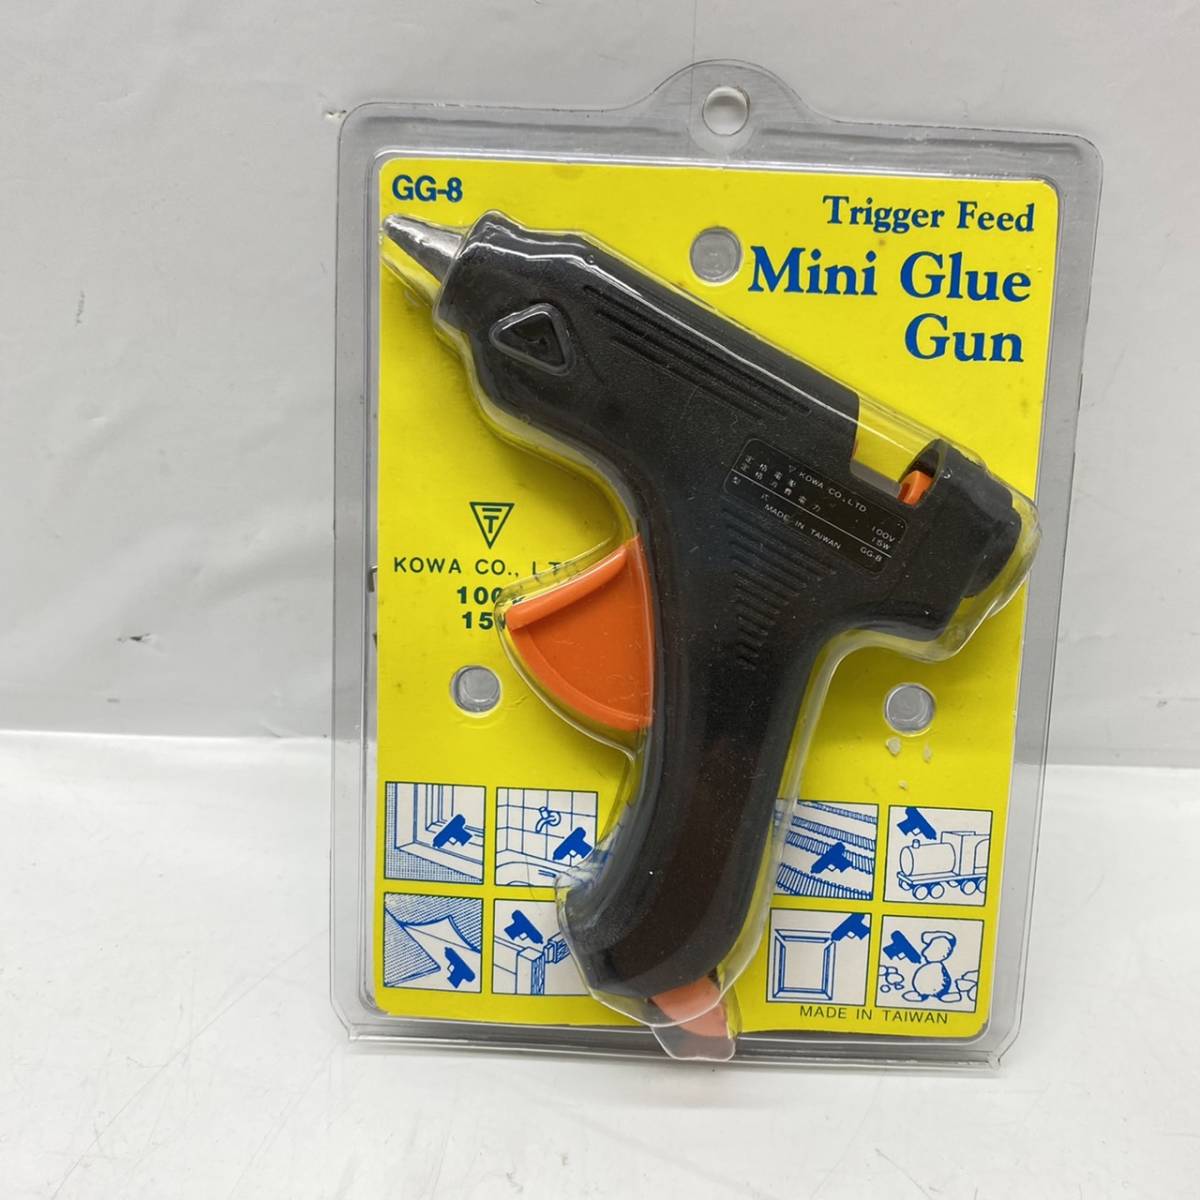 送料無料g07302 Mini Glue Gun CG-8 100V 15W Trigger Feed ミニ グルーガン_画像1